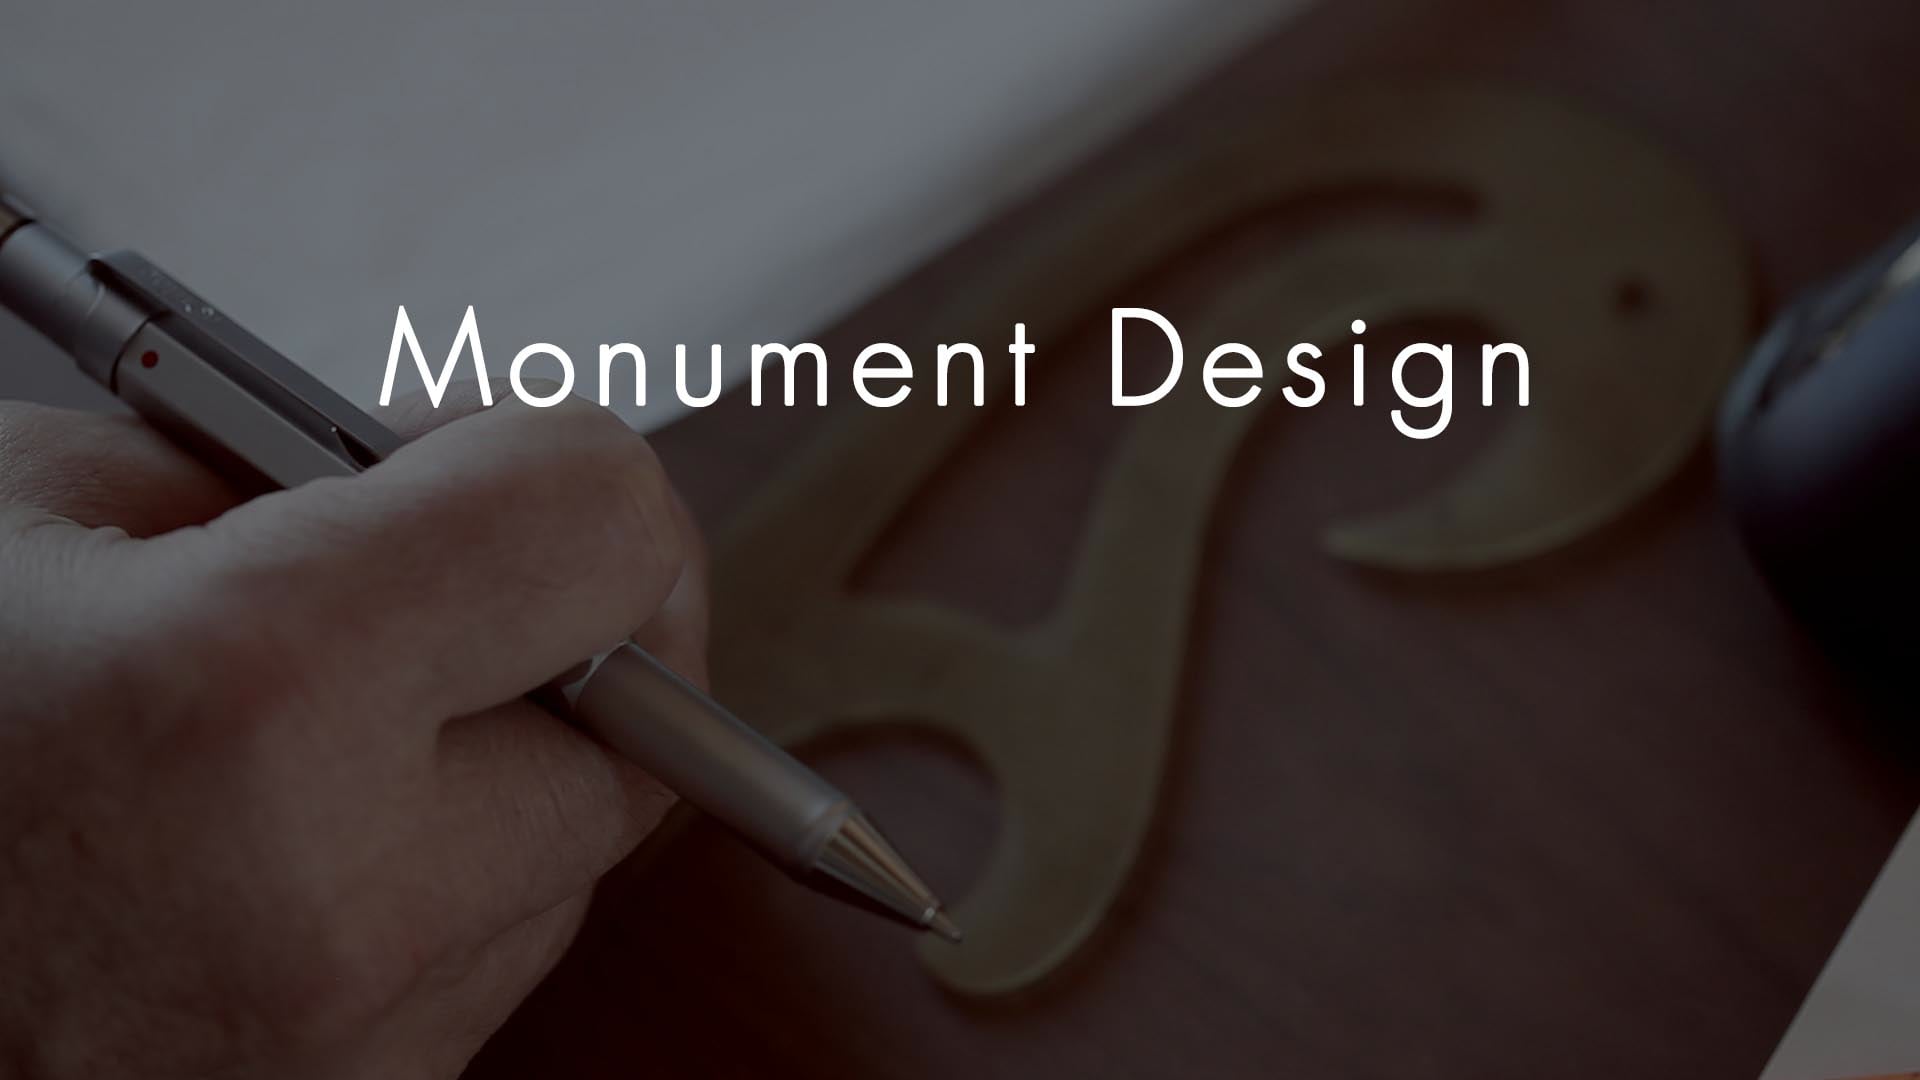 Monument Design